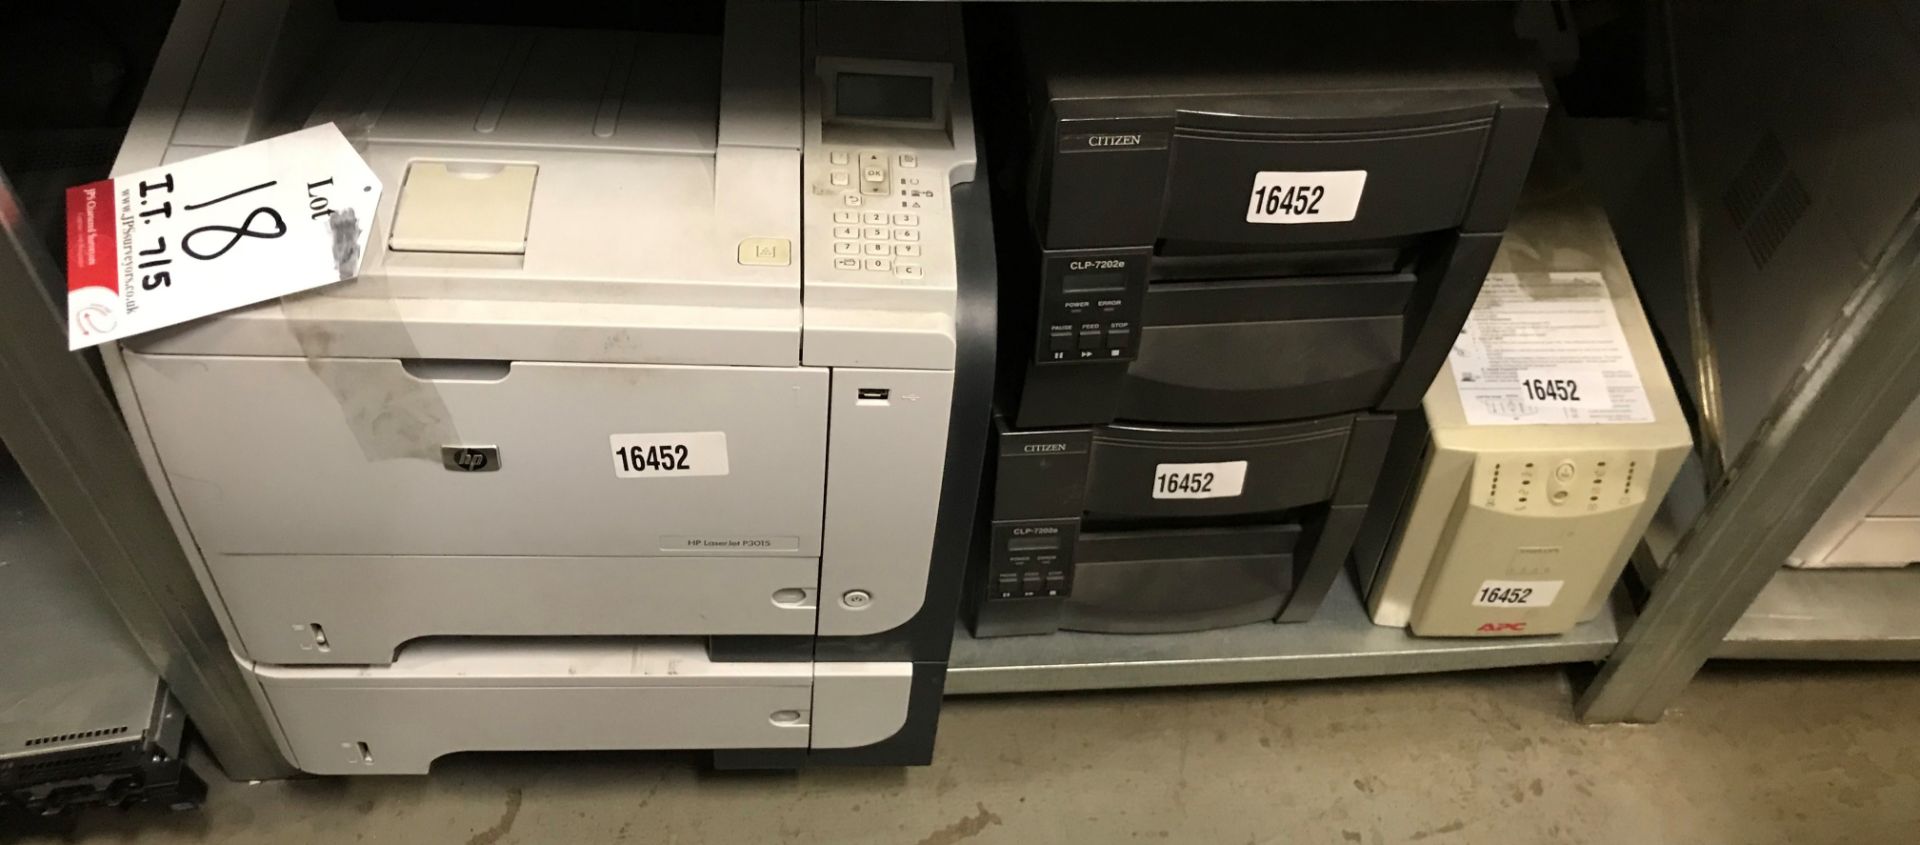 2 x Citizen Label Printers, APC Smart UPS 1000 & HP P3015 Laserjet Printer